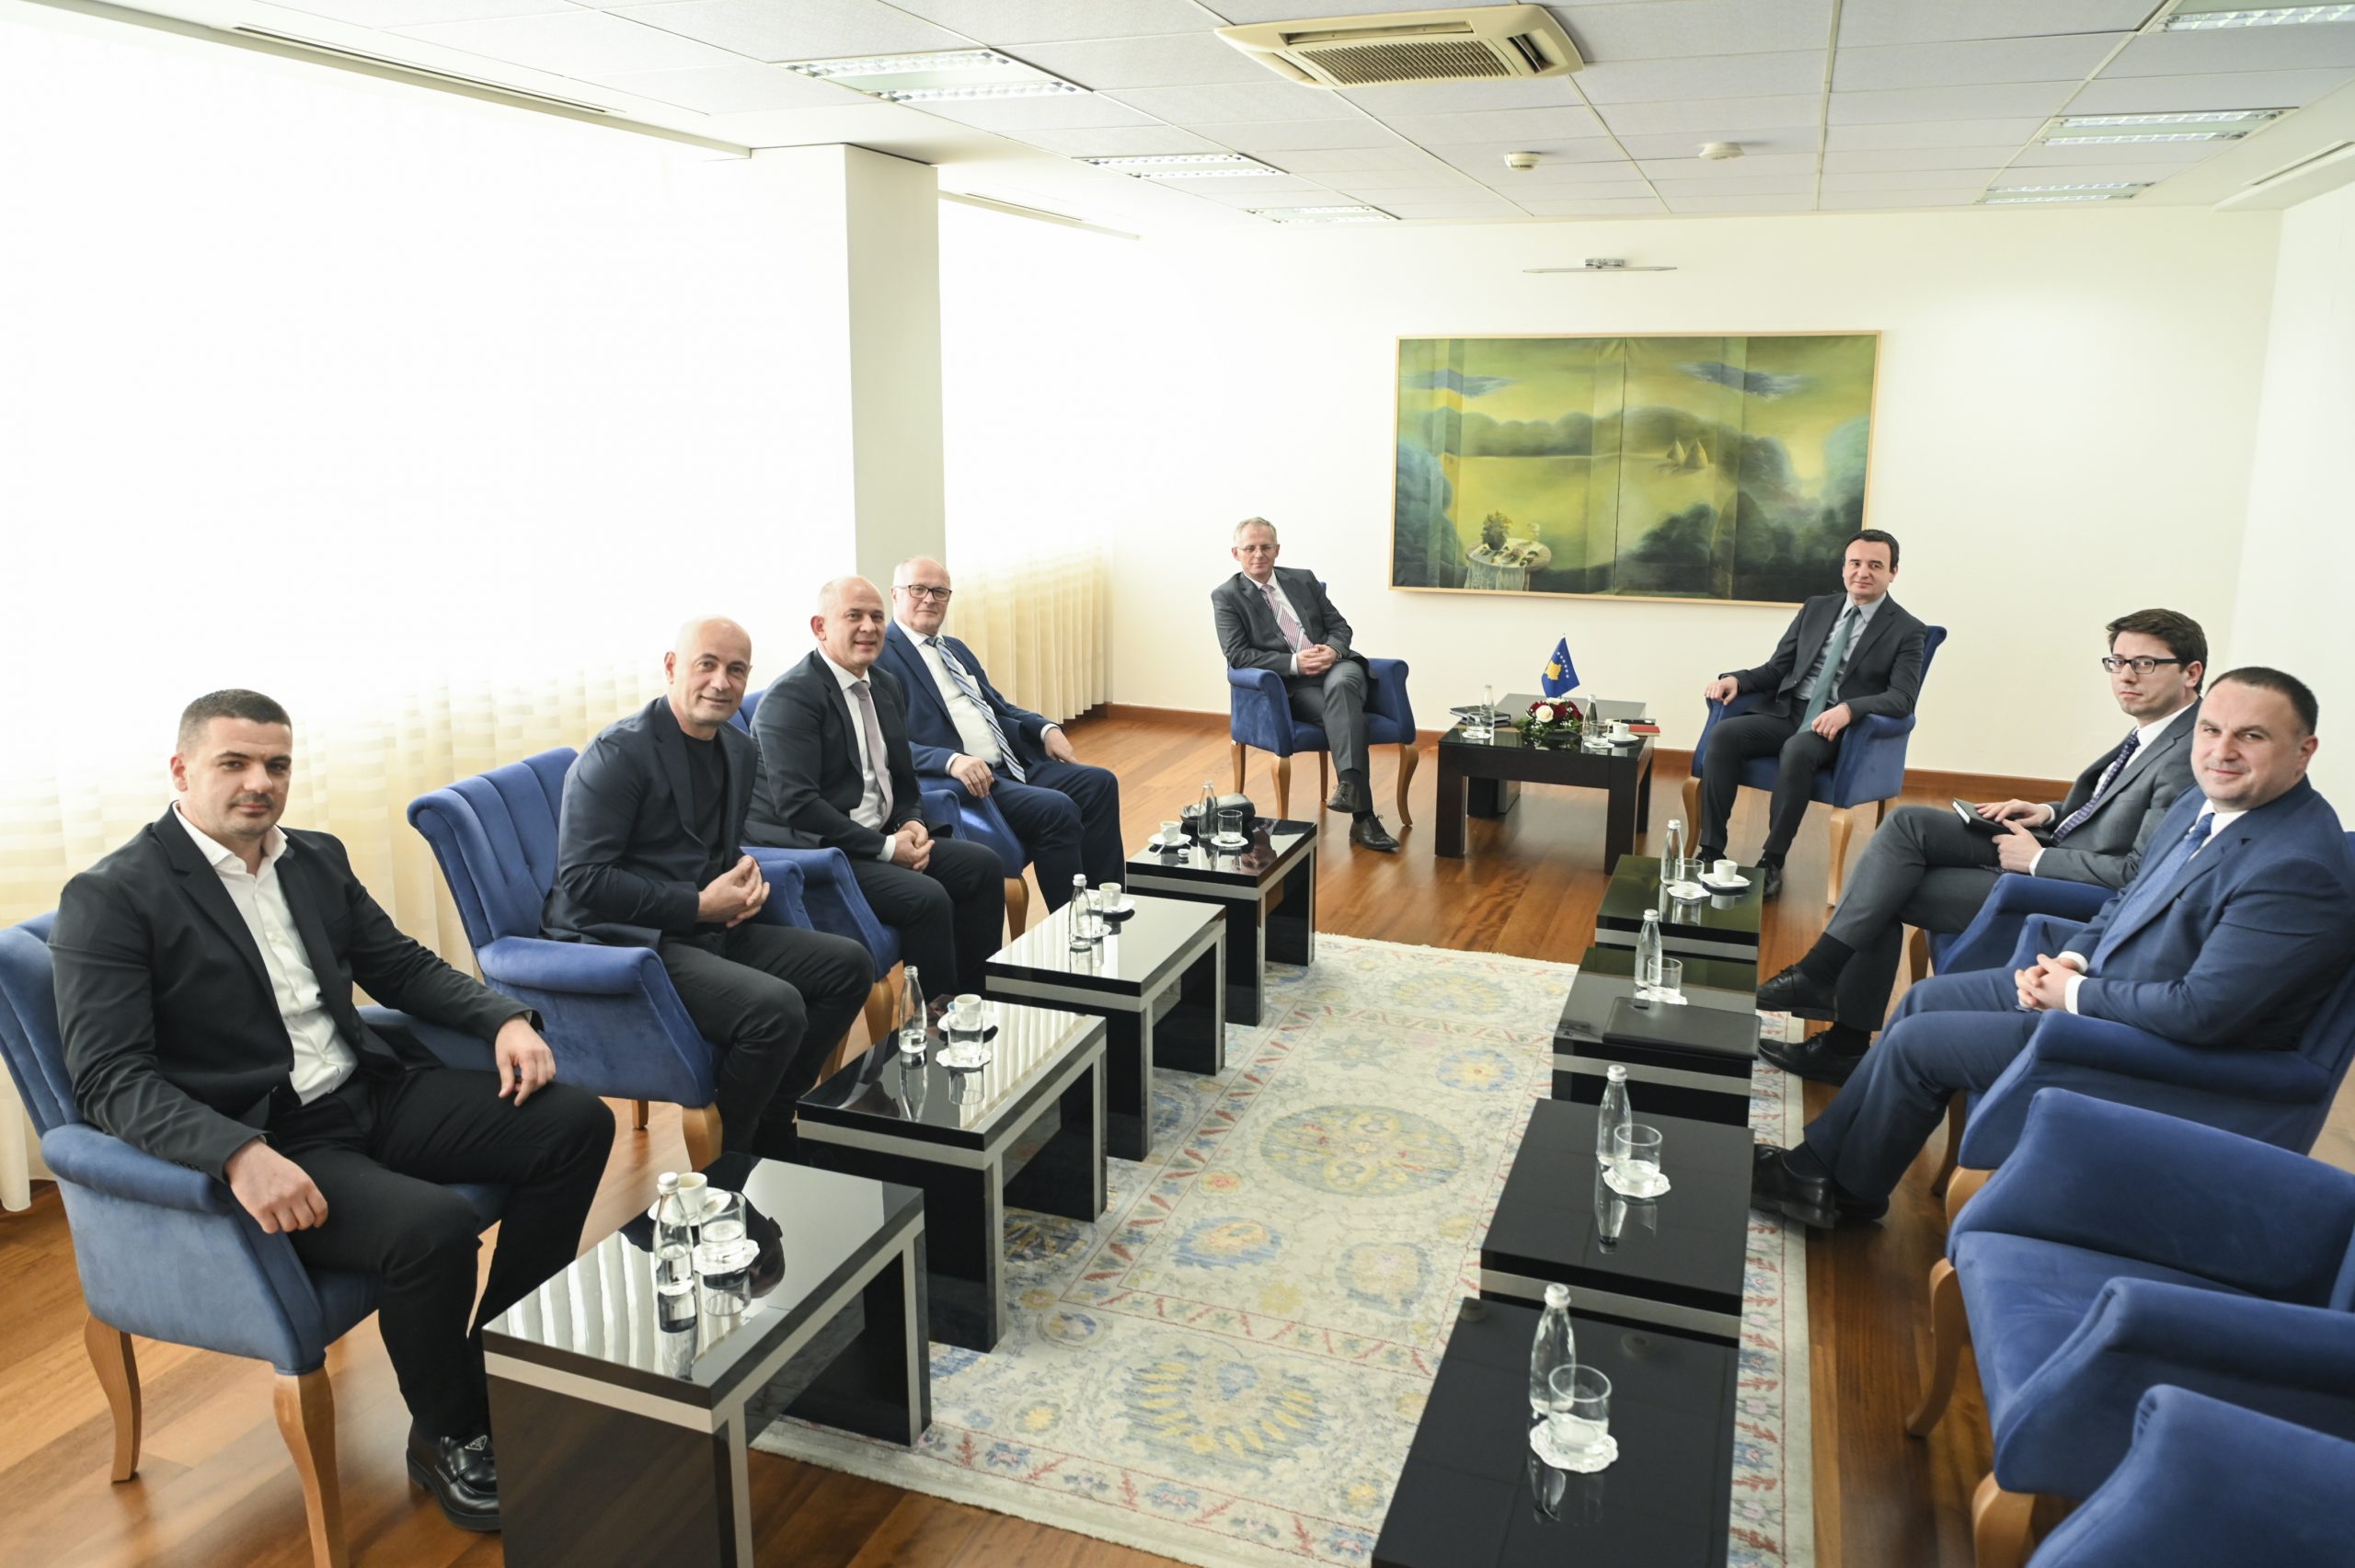 Kryeministri i Kosovës, Albin Kurti bashkë me zëvendësin e tij, Besnik Bislimi dhe ministrin e Financave, Hekuran Murati, kanë pritur sot në takim disa biznesmenë kosovarë.